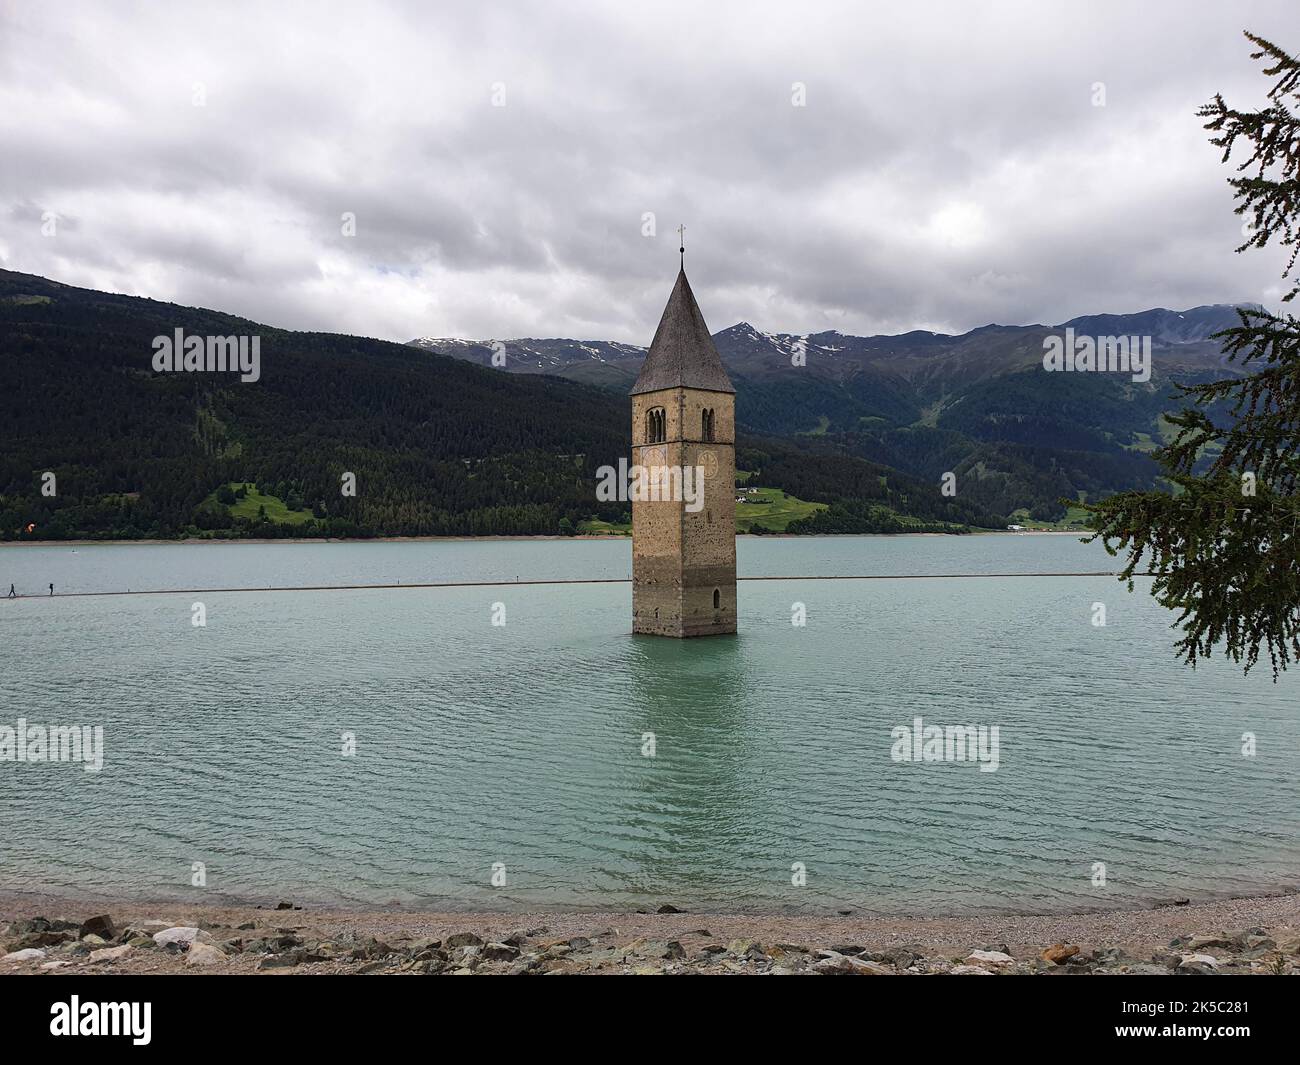 Il campanile di Curon si sommerse nel lago di Resia nella Val Venosta Foto Stock